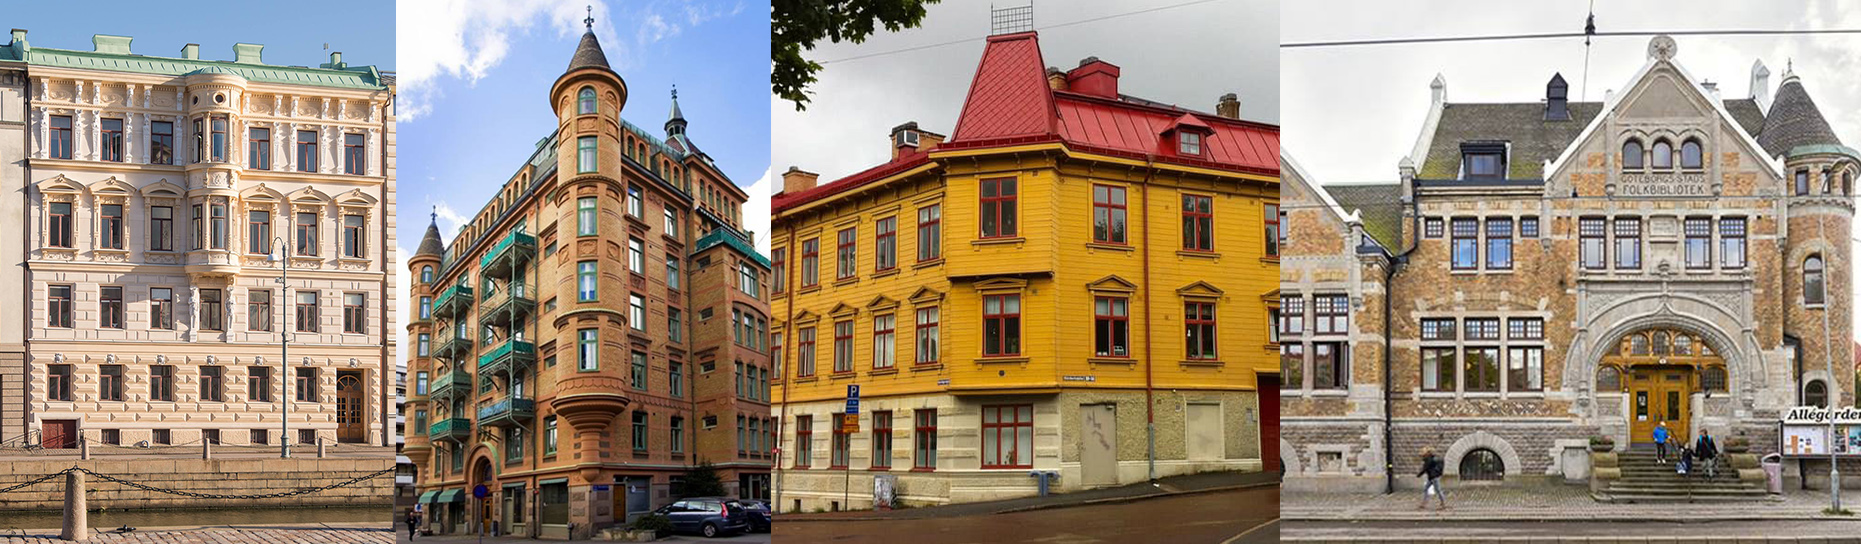 Lista - vilka är Göteborgs vackraste byggnader?